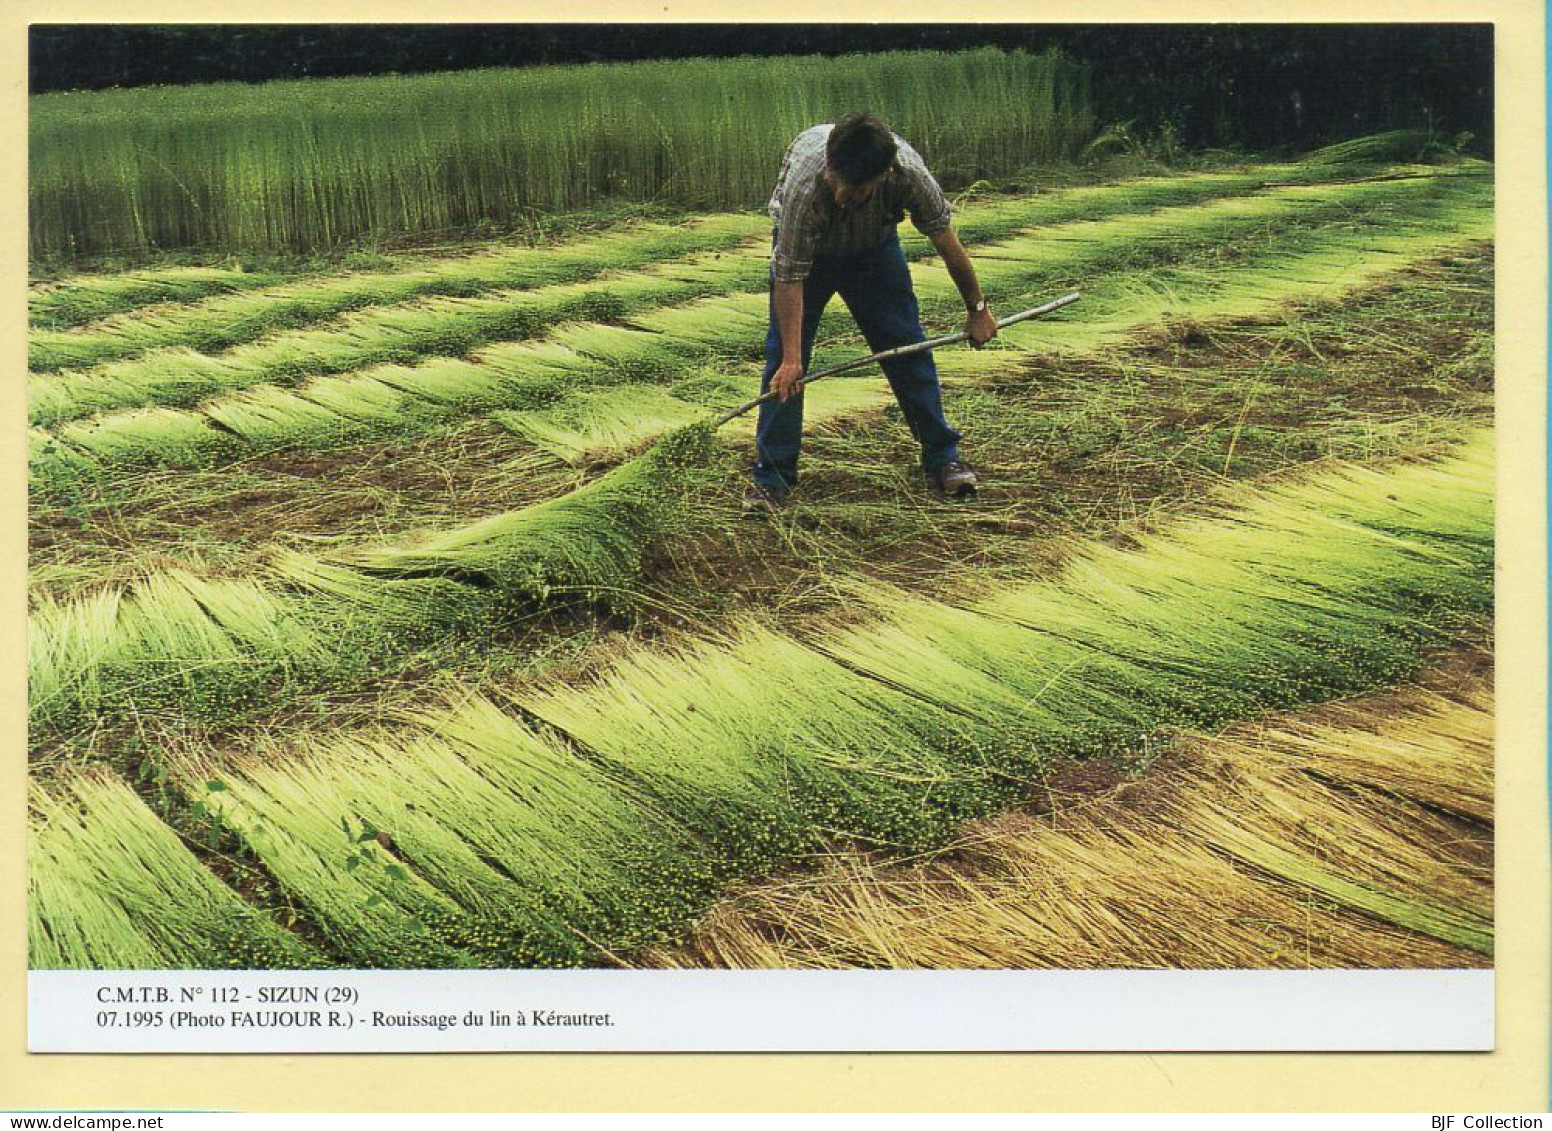 Rouissage Du Lin à Kérautret / SIZUN (29) (FAUJOUR R.) C.M.T.B. N° 112 / 400 Exemplaires (CARTOUEST) - Bauern